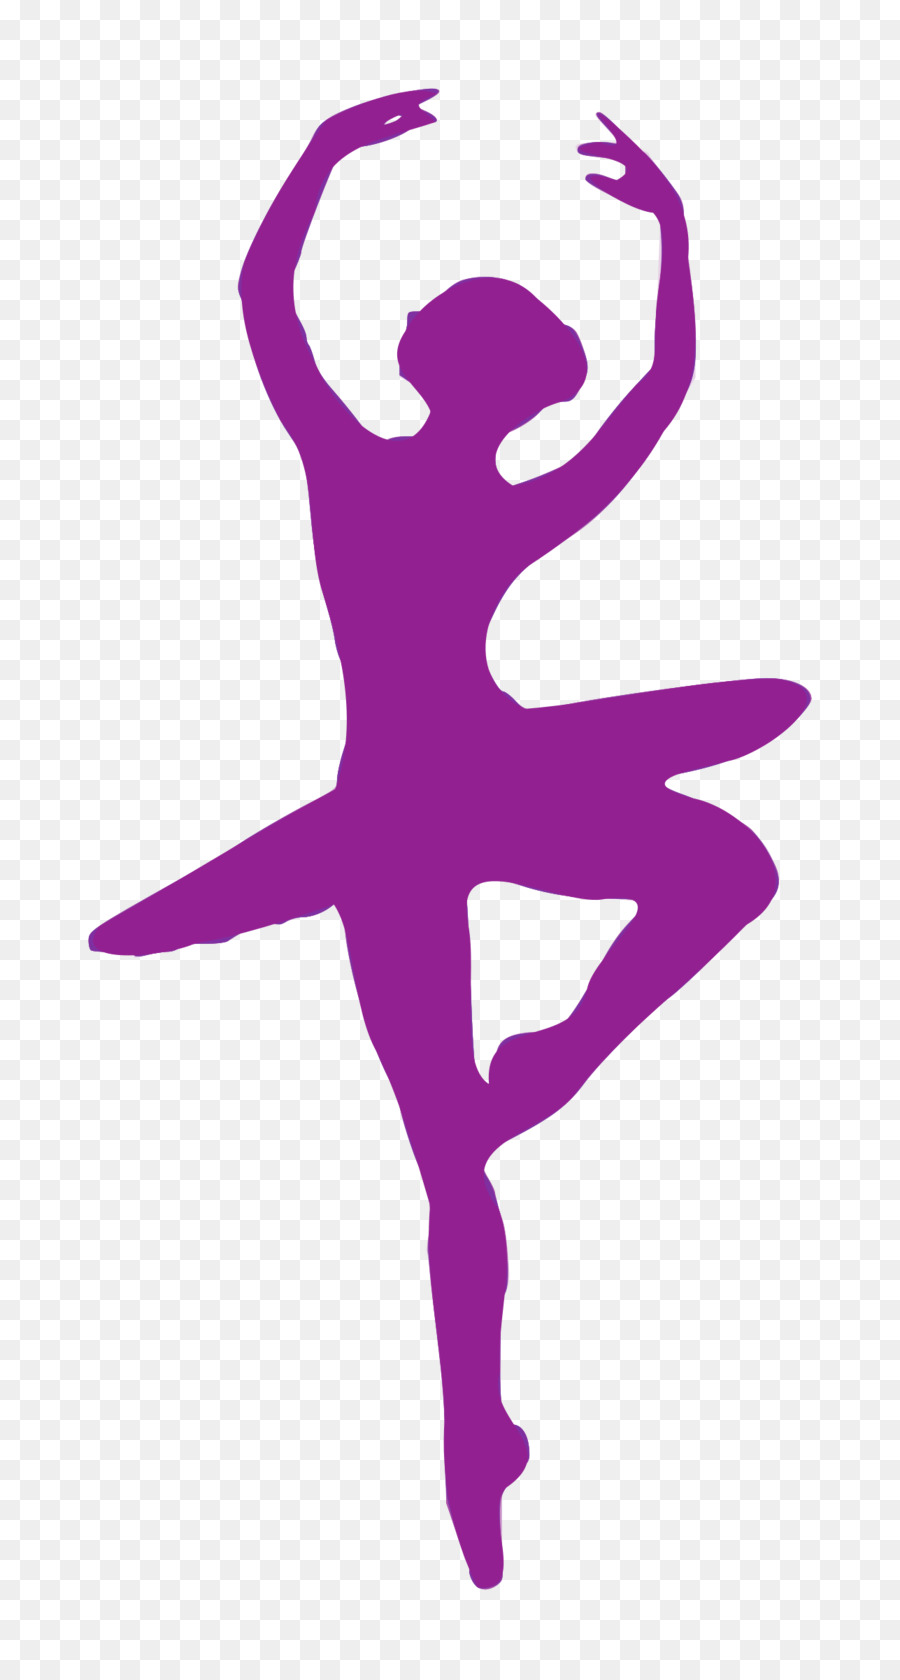 Ballet clipart pink ballerina. Dancer silhouette clip art